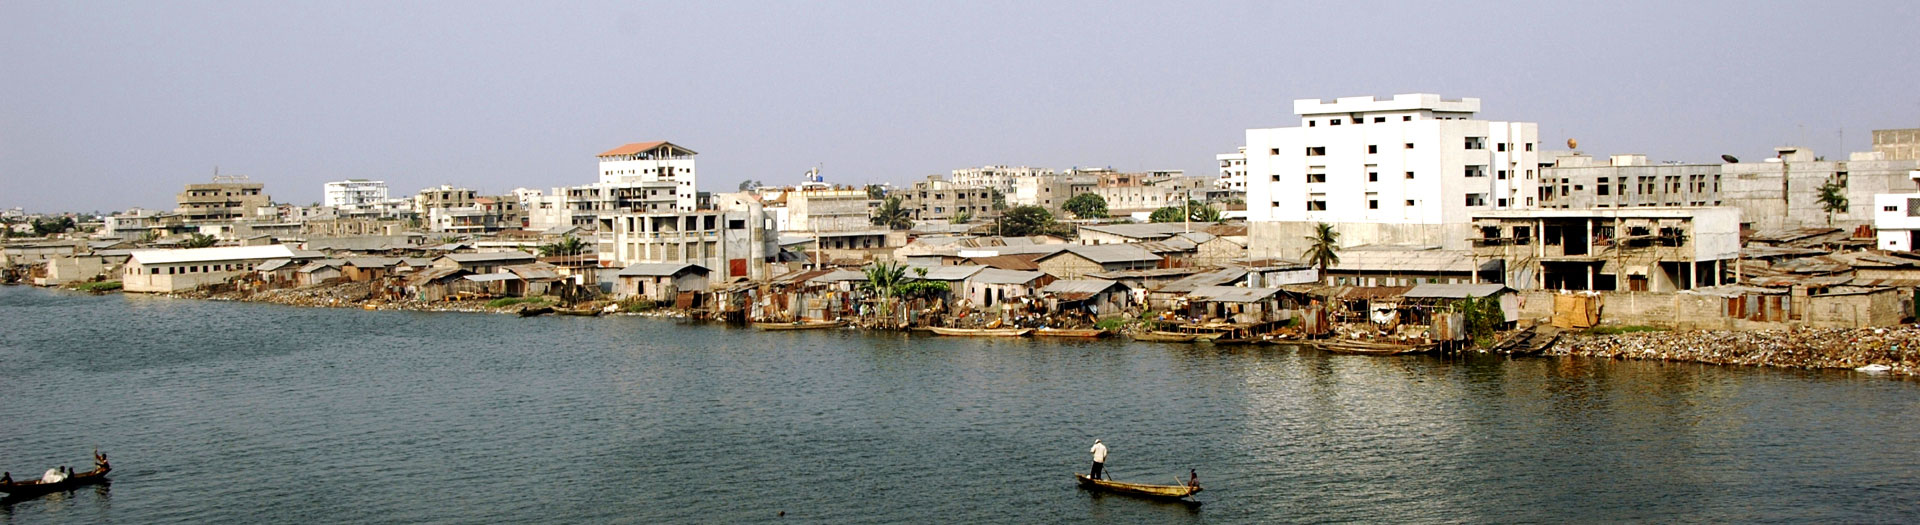 Agence Ortec à Cotonou au Bénin